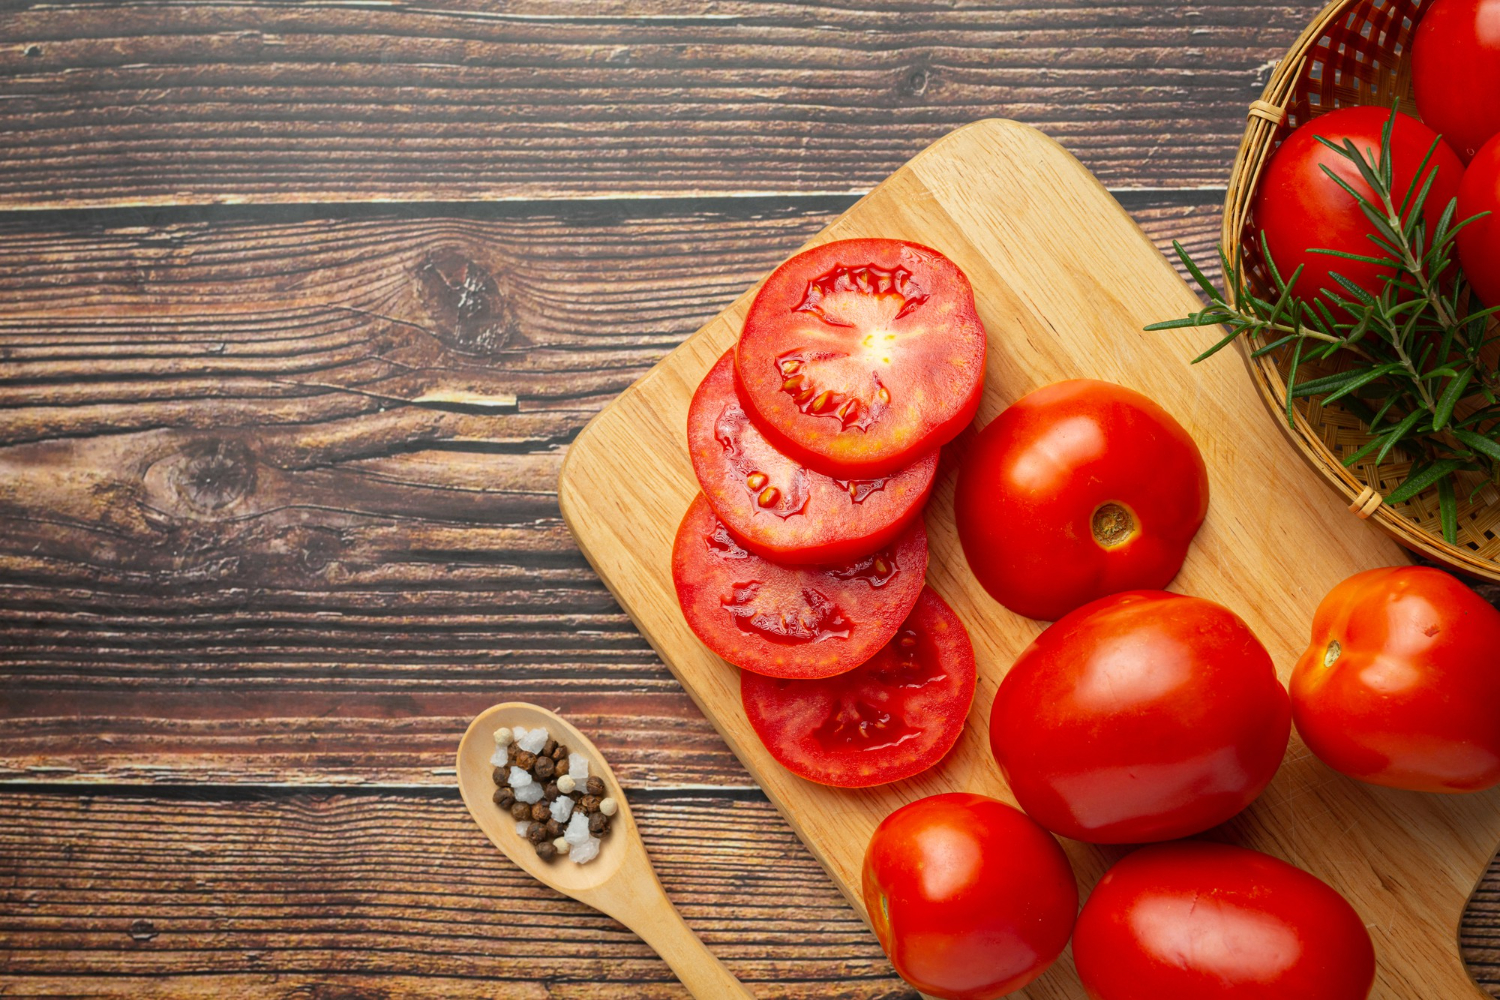 Чим замінити томатний соус: 5 геніальних варіантів